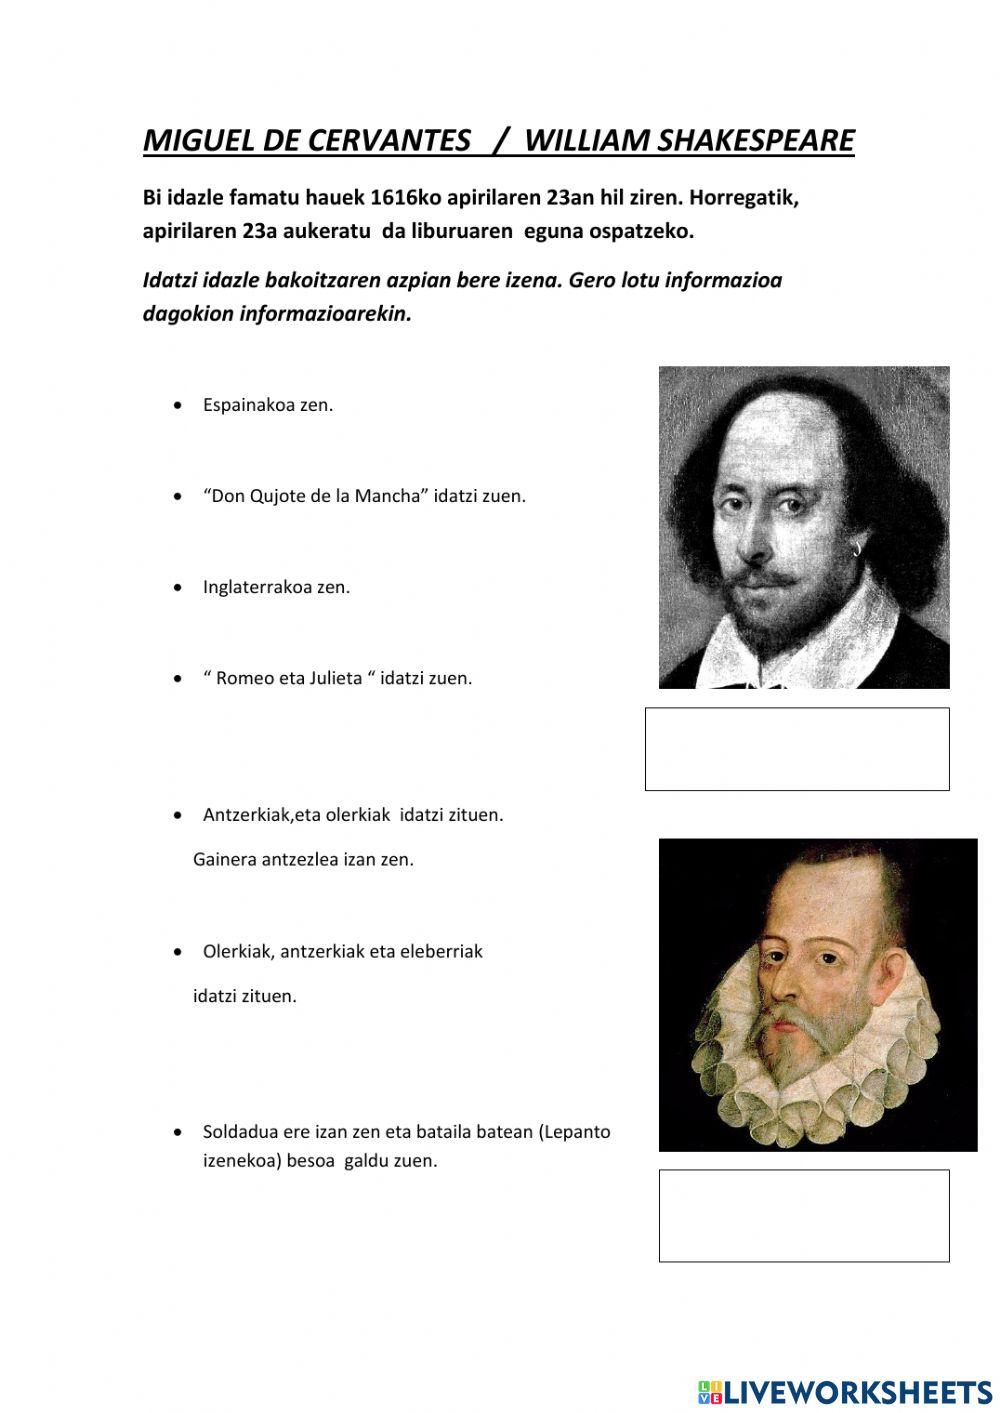 William Shakespeare - Miguel de Cervantes